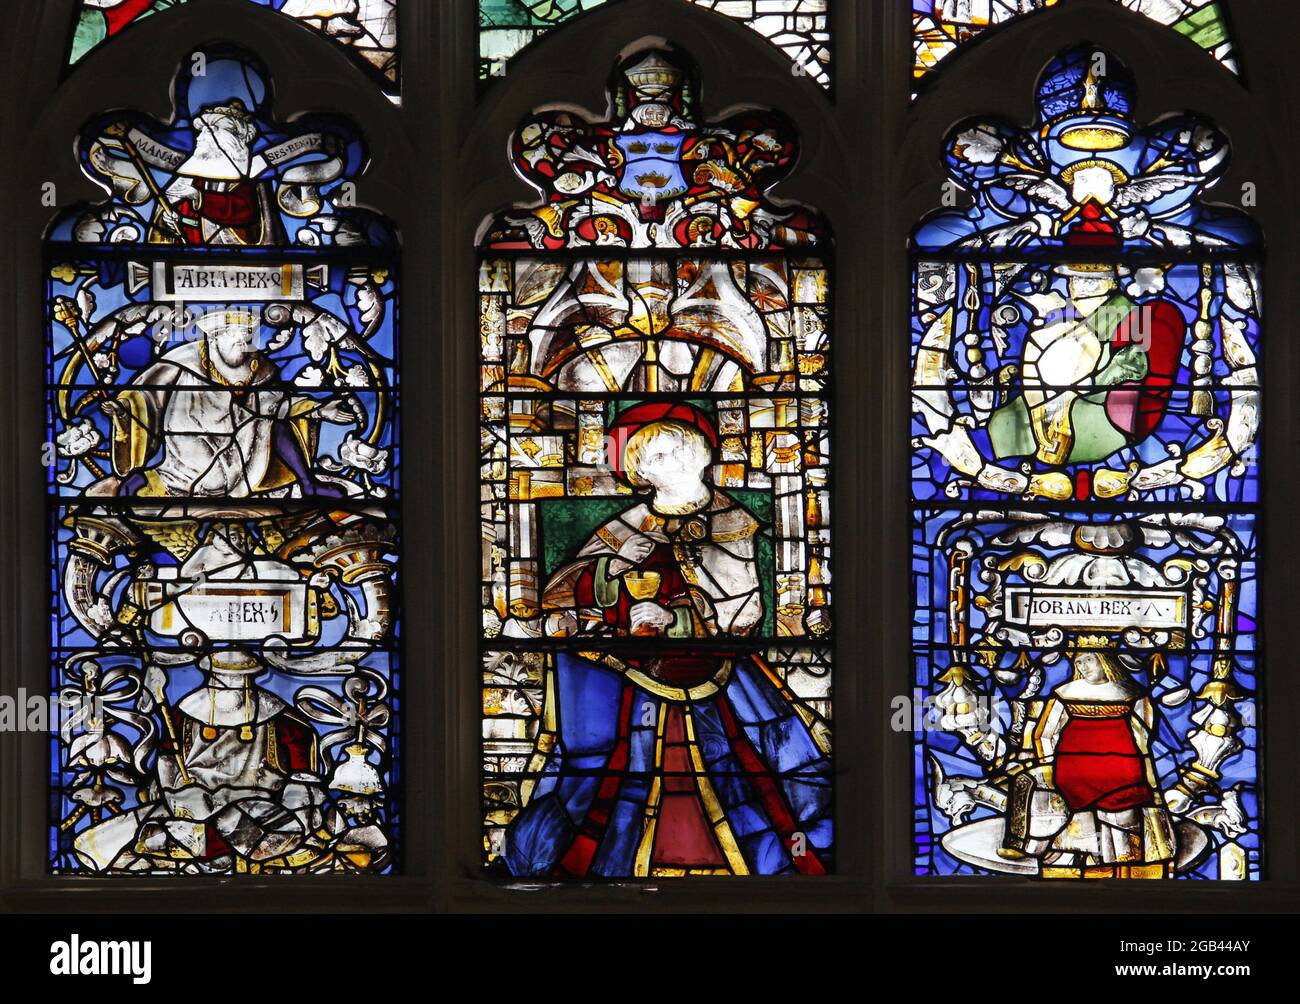 Vitraux médiévaux représentant Saint Jean et les Rois de Juda (Maison de David), la cathédrale Saint-Edmundsbury, Bury St Edmunds, Suffolk, Angleterre Banque D'Images